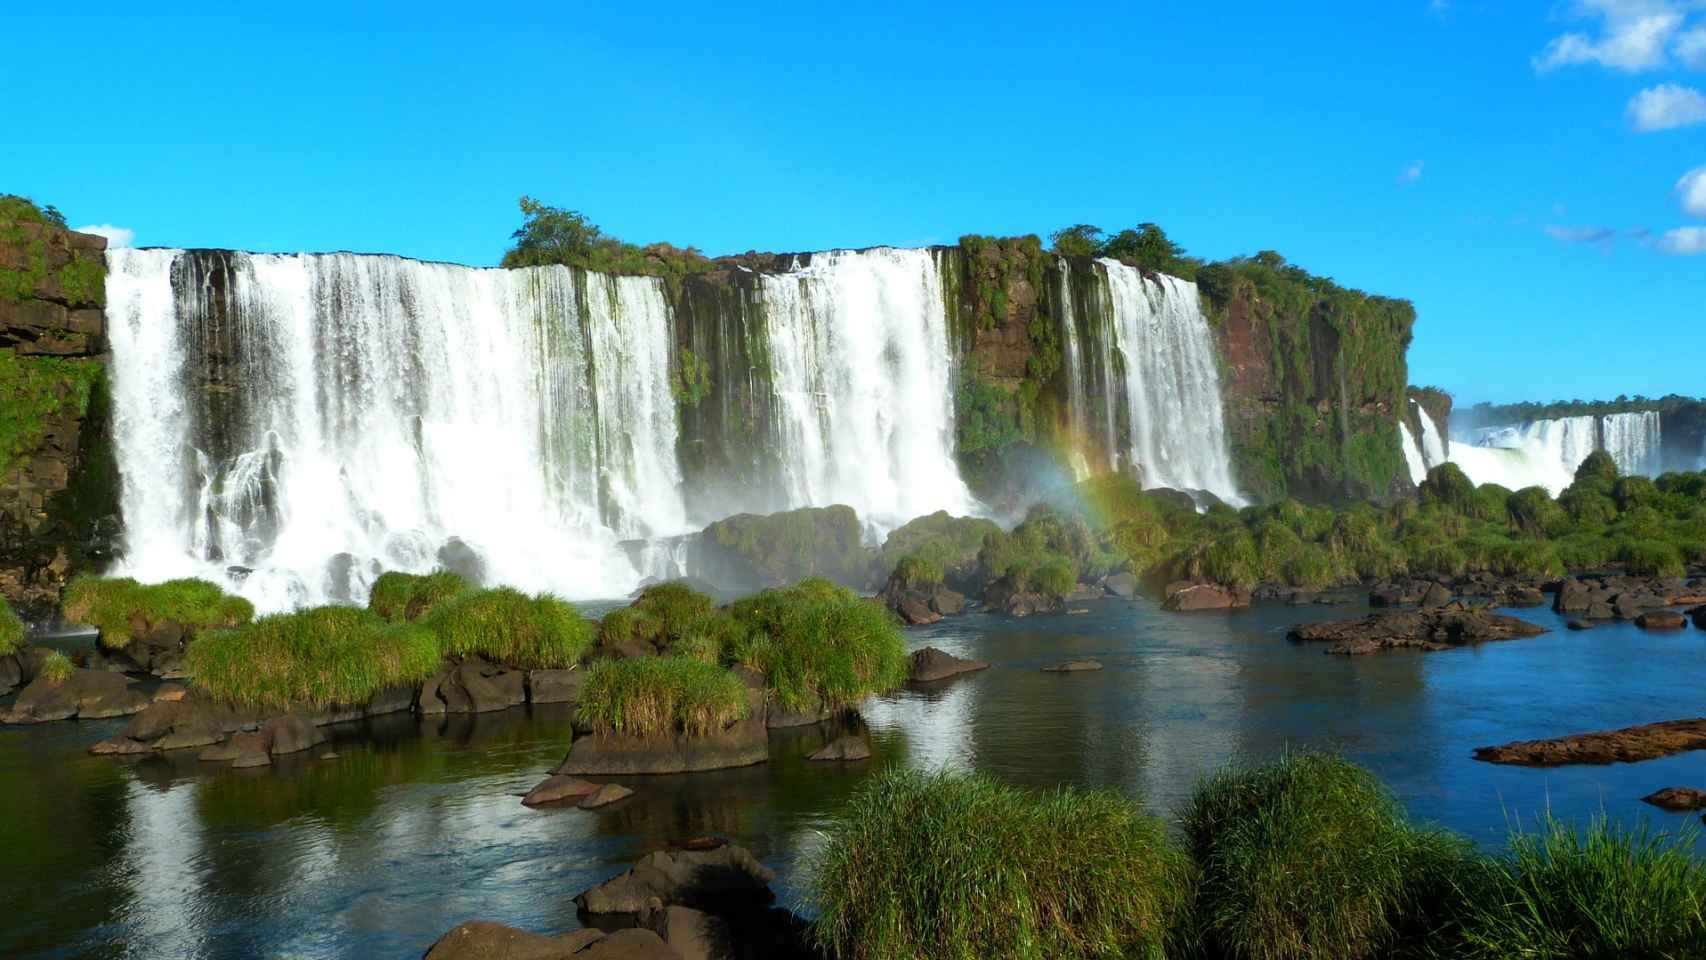 Cataratas del Iguazú vistas desde el lado brasileño.